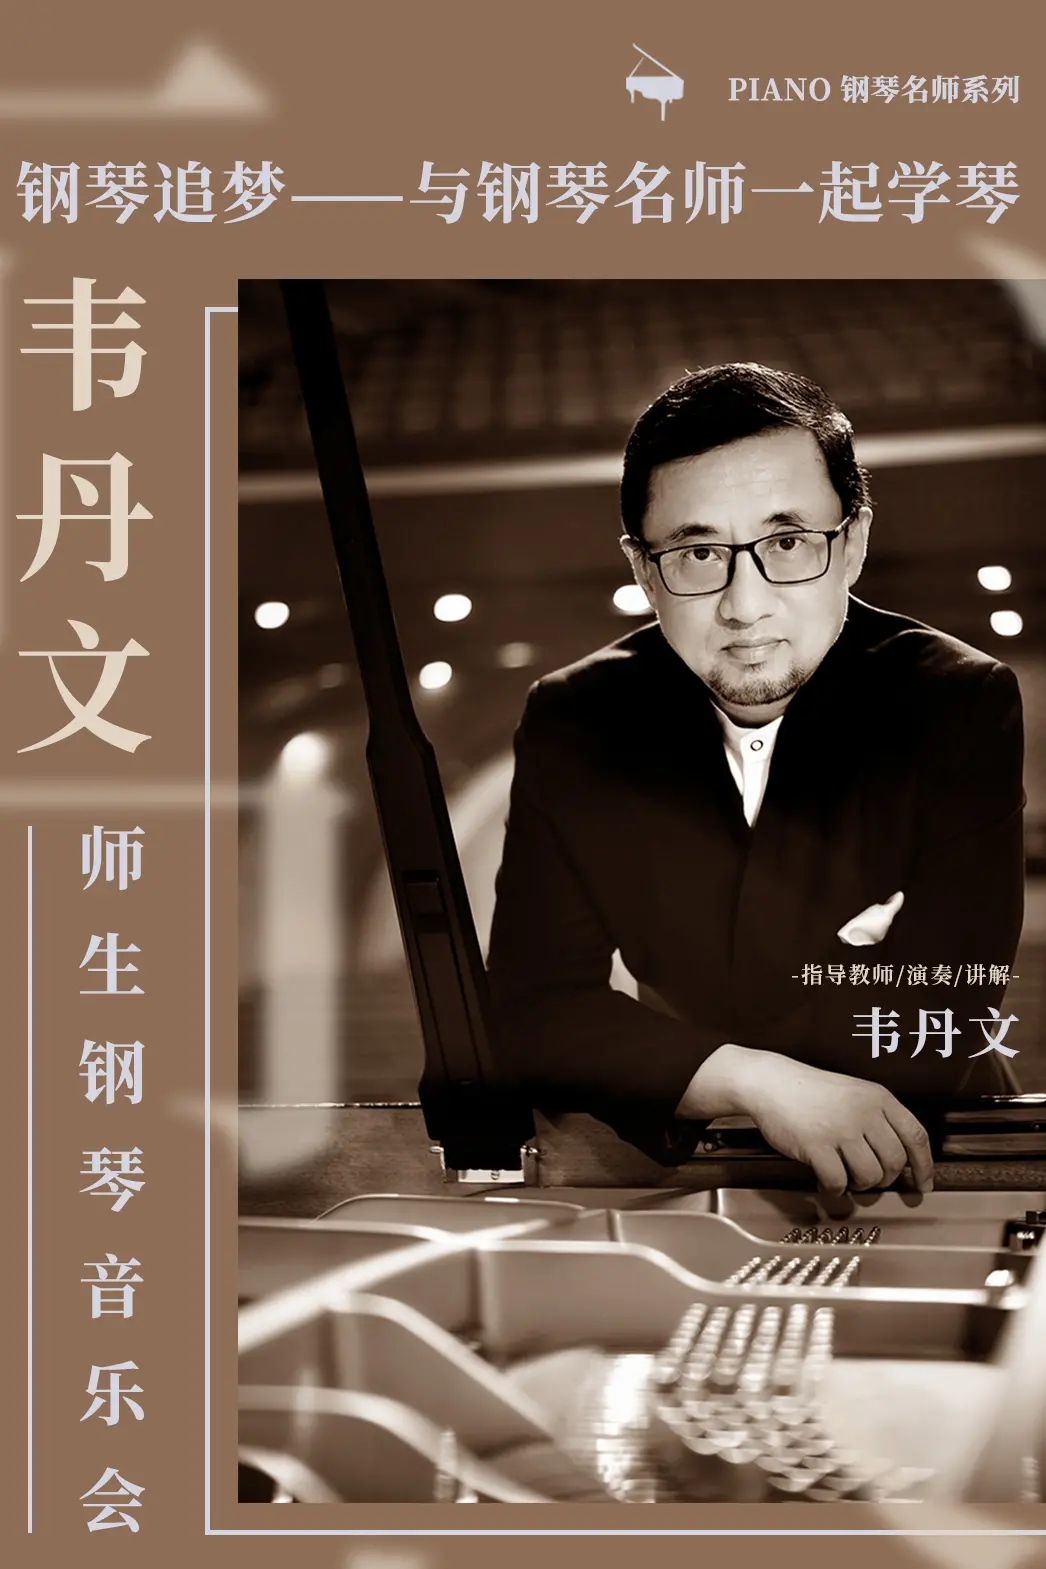 黄亚蒙师生钢琴音乐会北京站